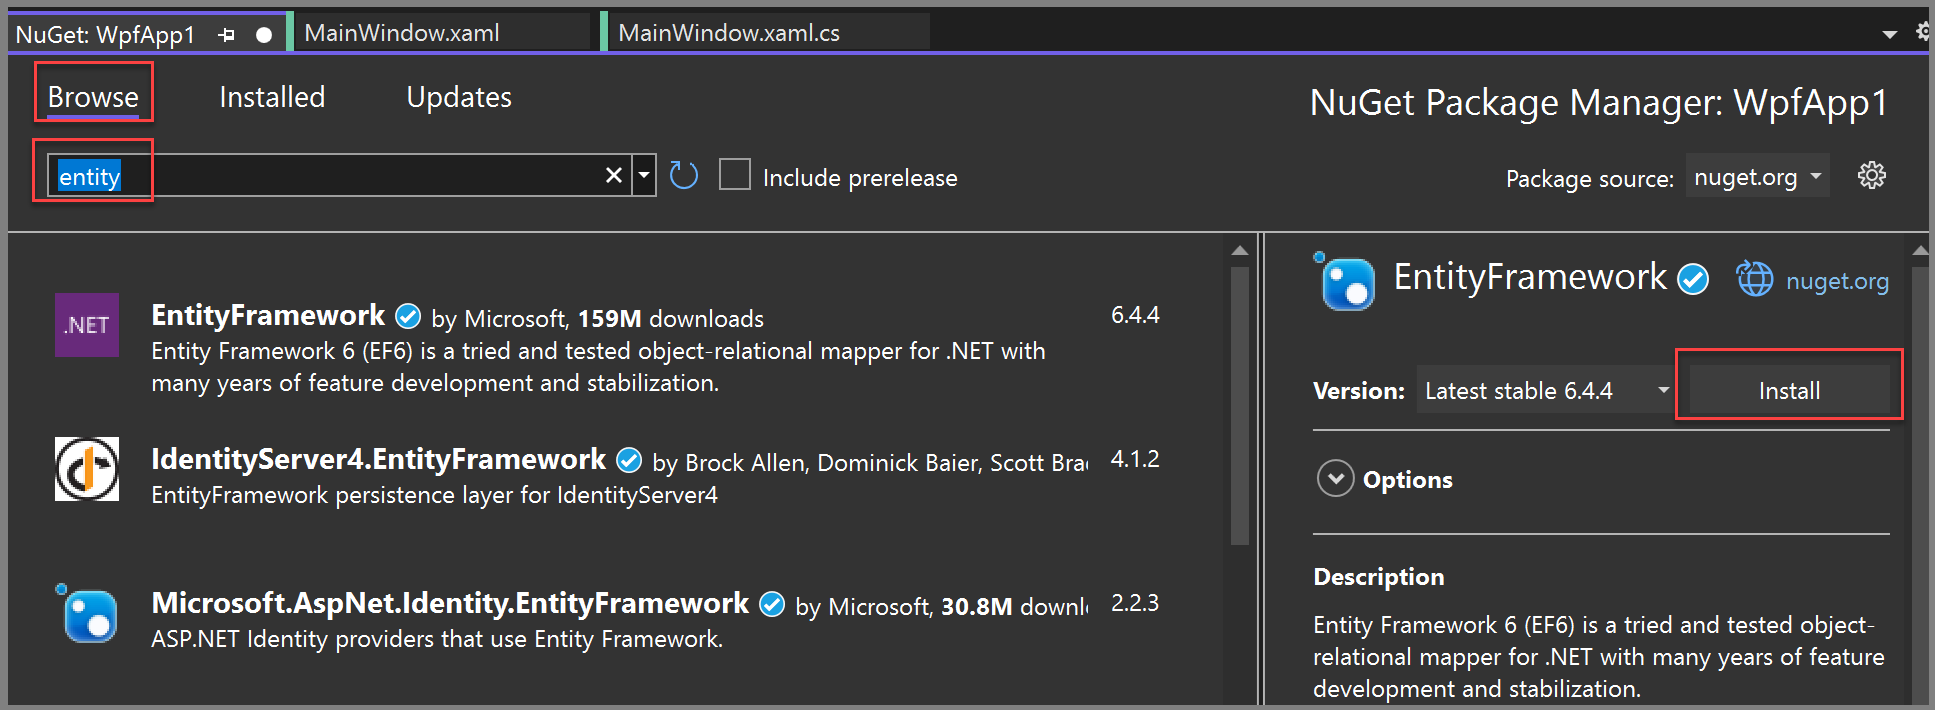 Entity Framework NuGet Paketini gösteren ekran görüntüsü.